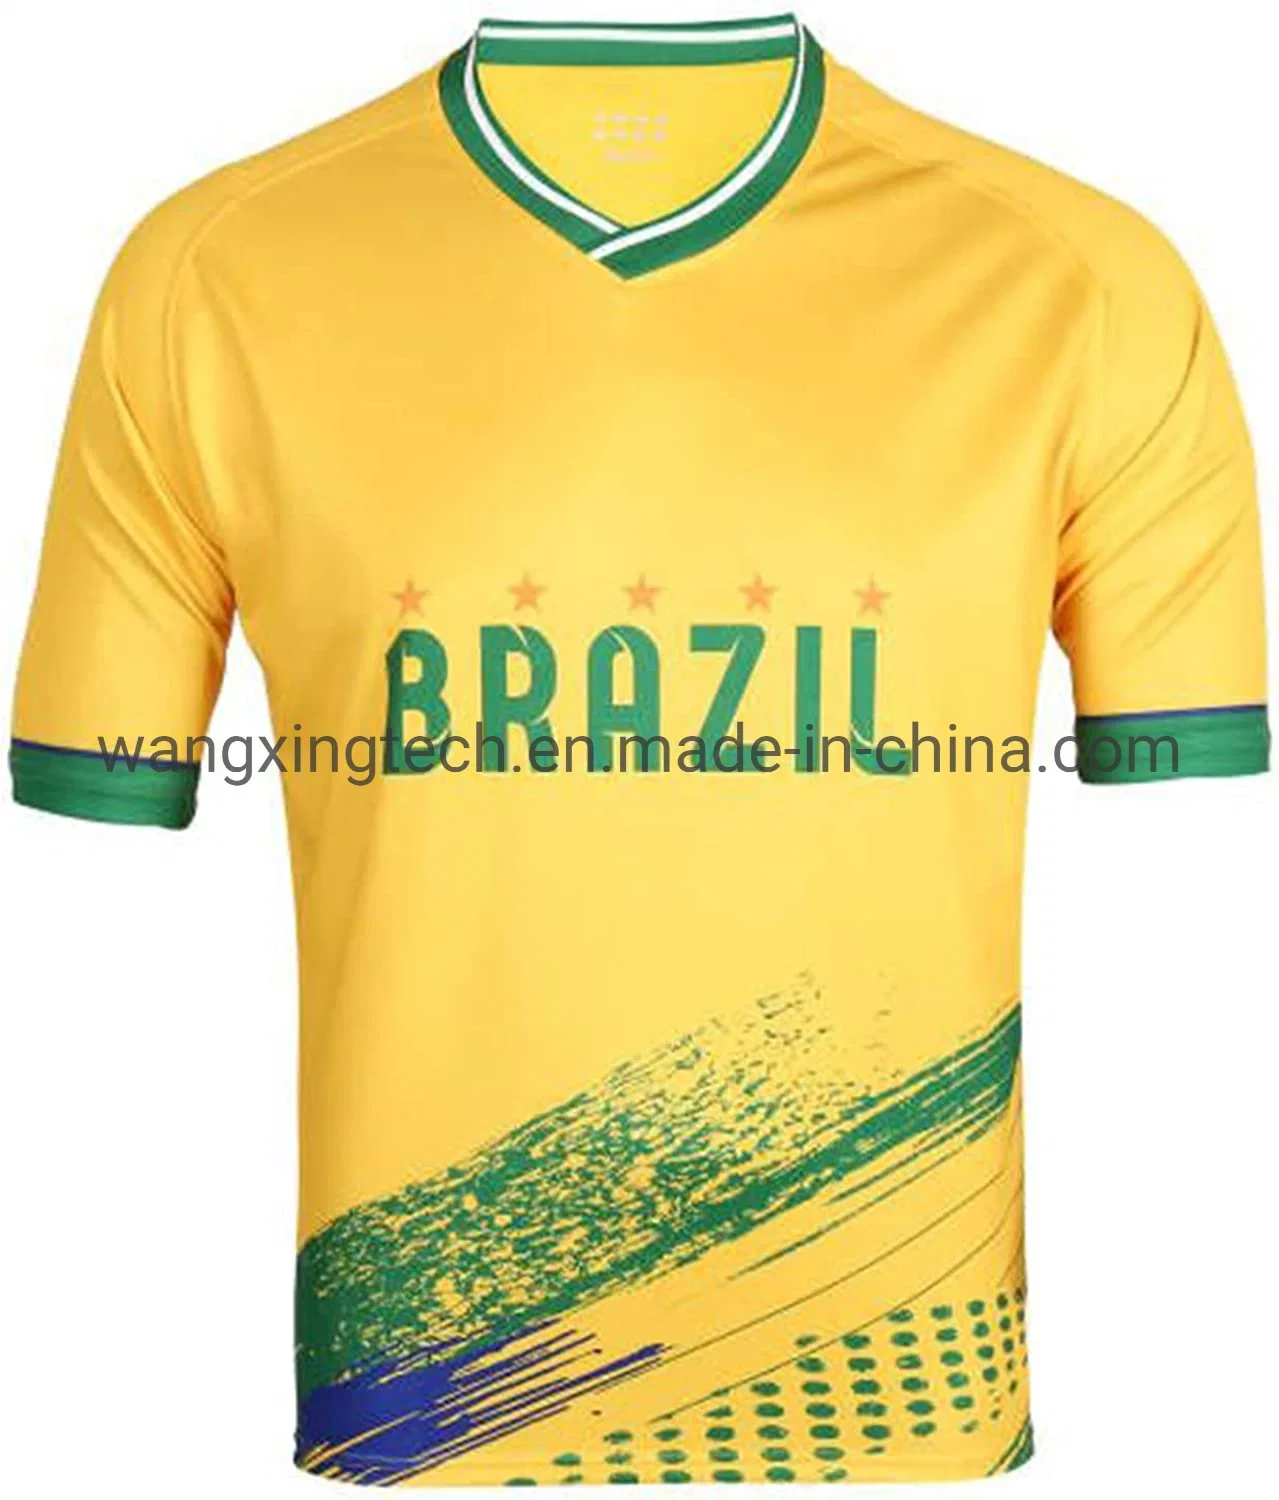 Brasilien Country Team Fußballtrikot Im Modedesign